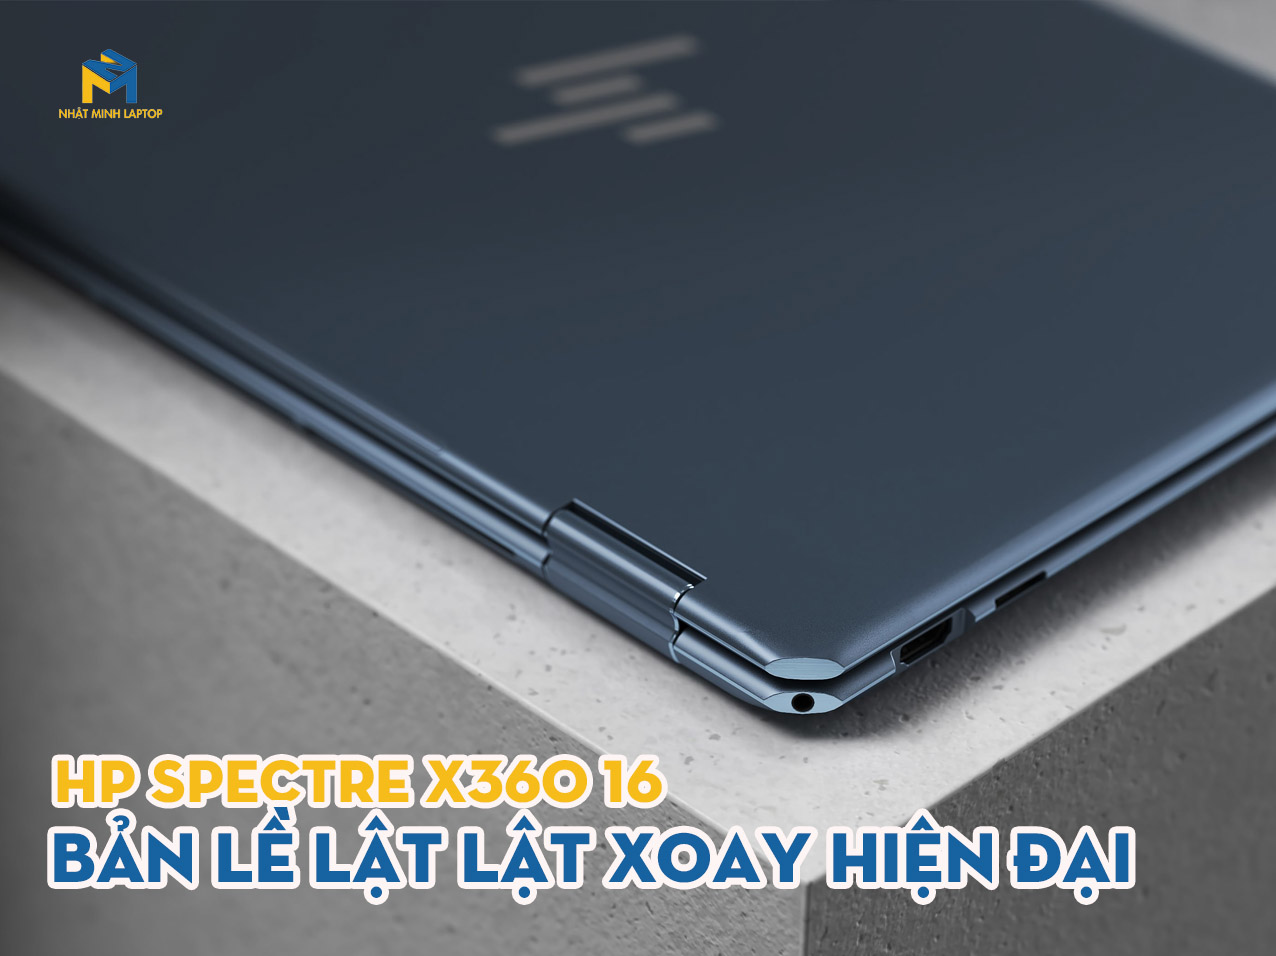 Laptop HP Spectre x360 16 sở hữu bản lề lật xoay hiện đại